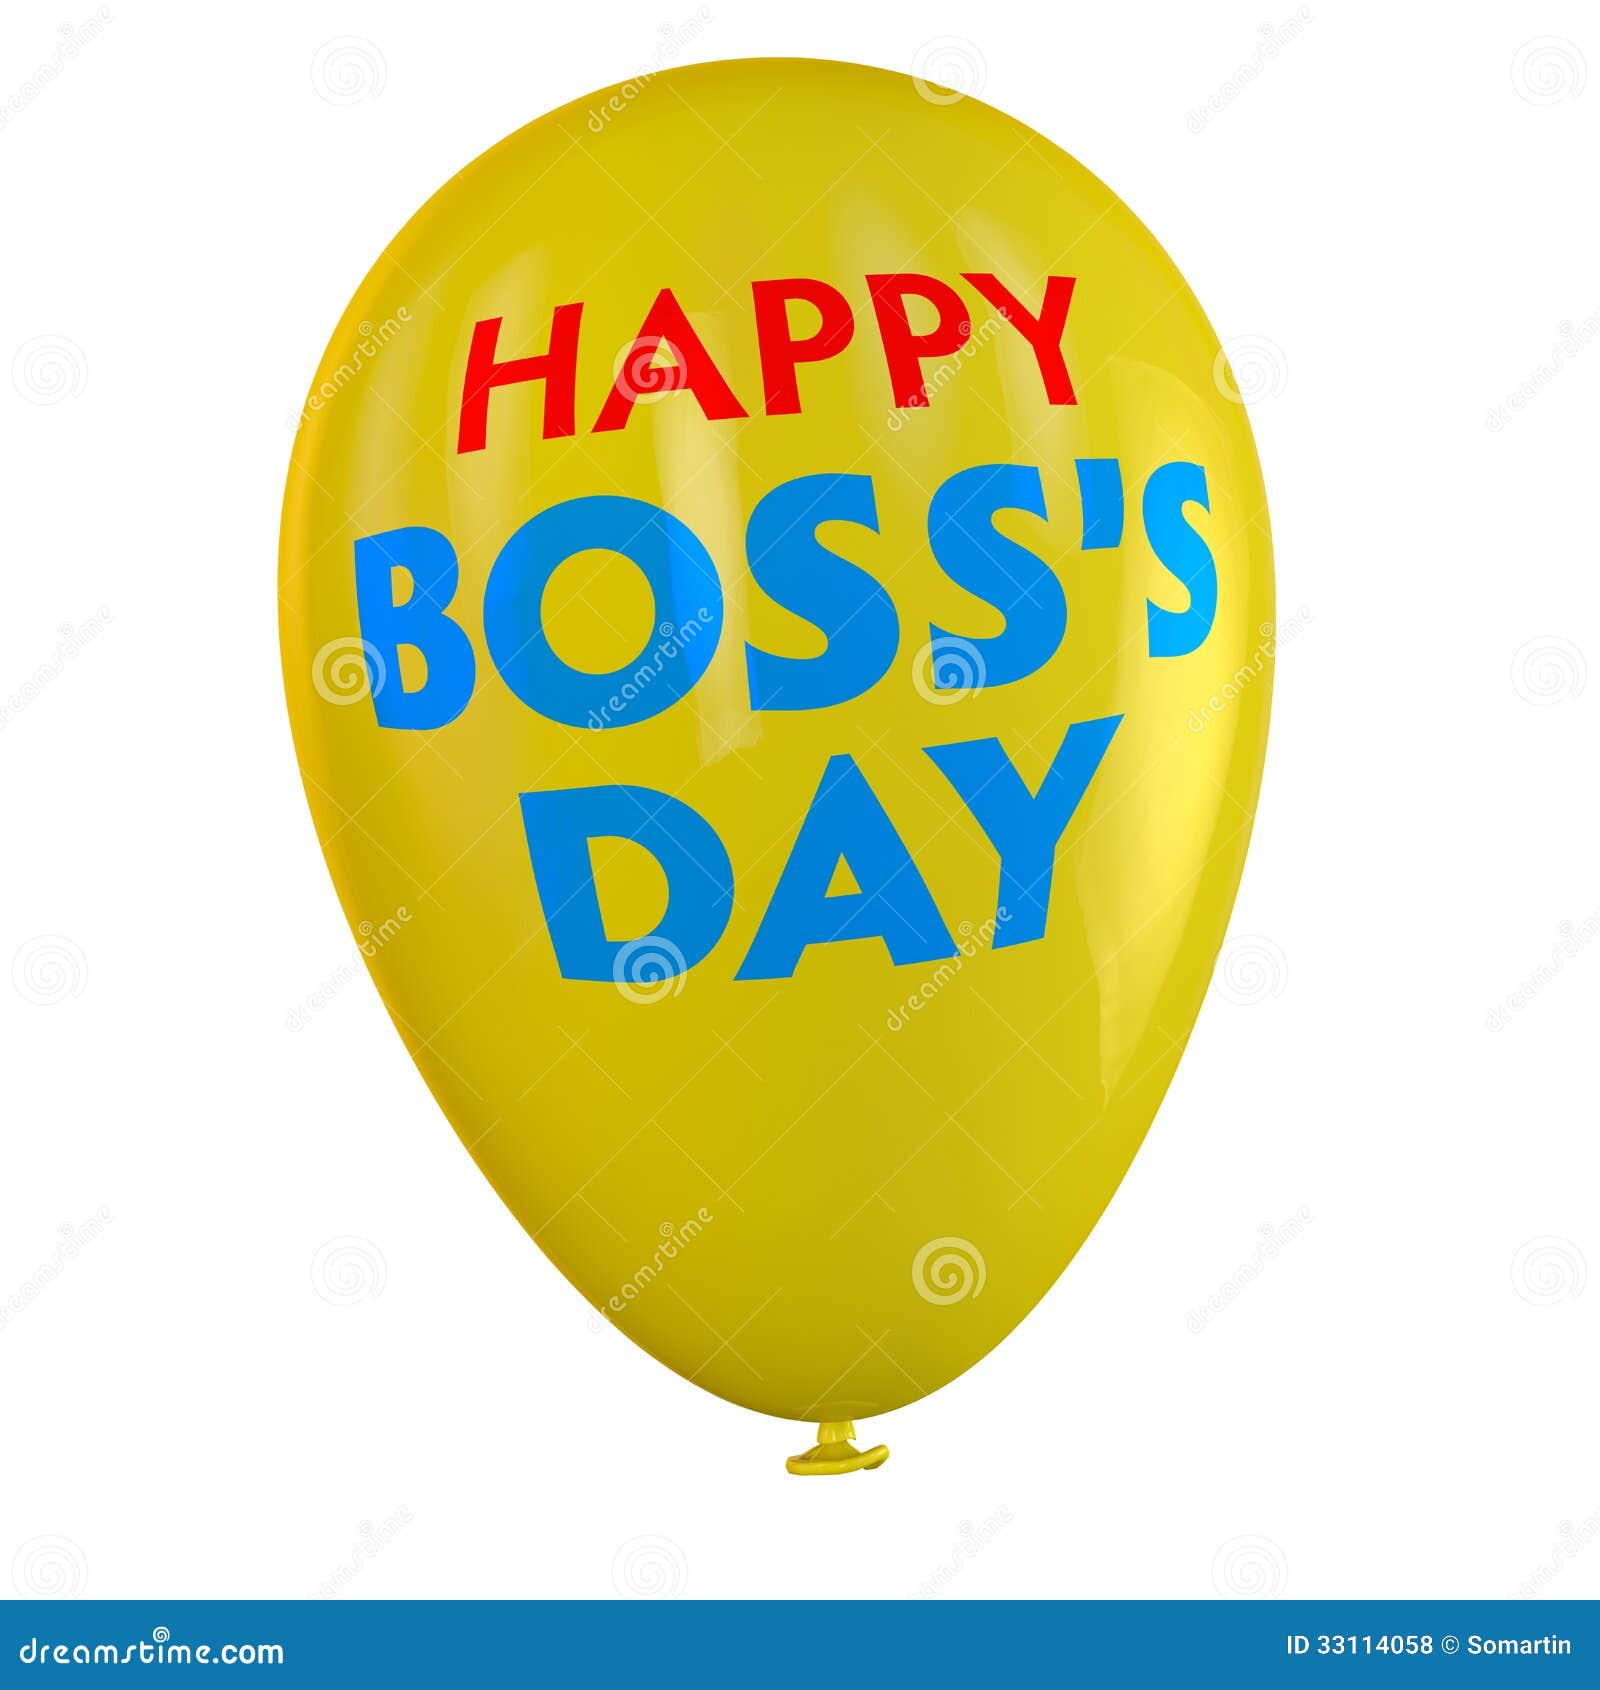 clip art happy boss's day - photo #44